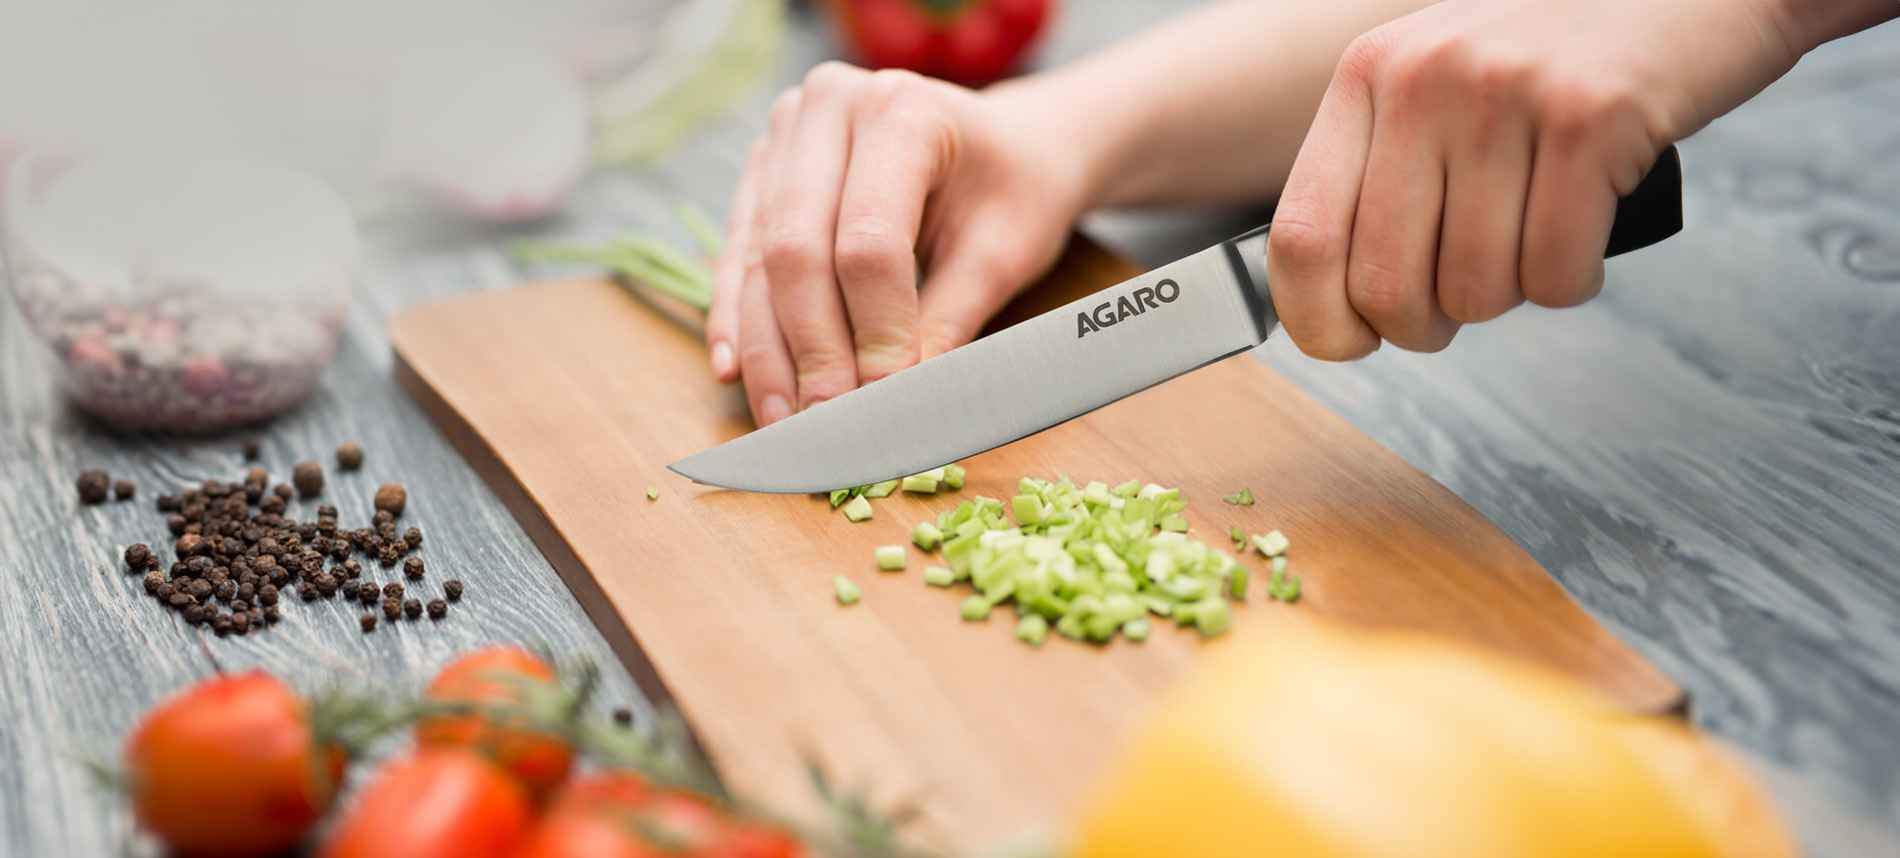 Sharp Kitchen Carving Knife, Knives Fruit Carving Knife